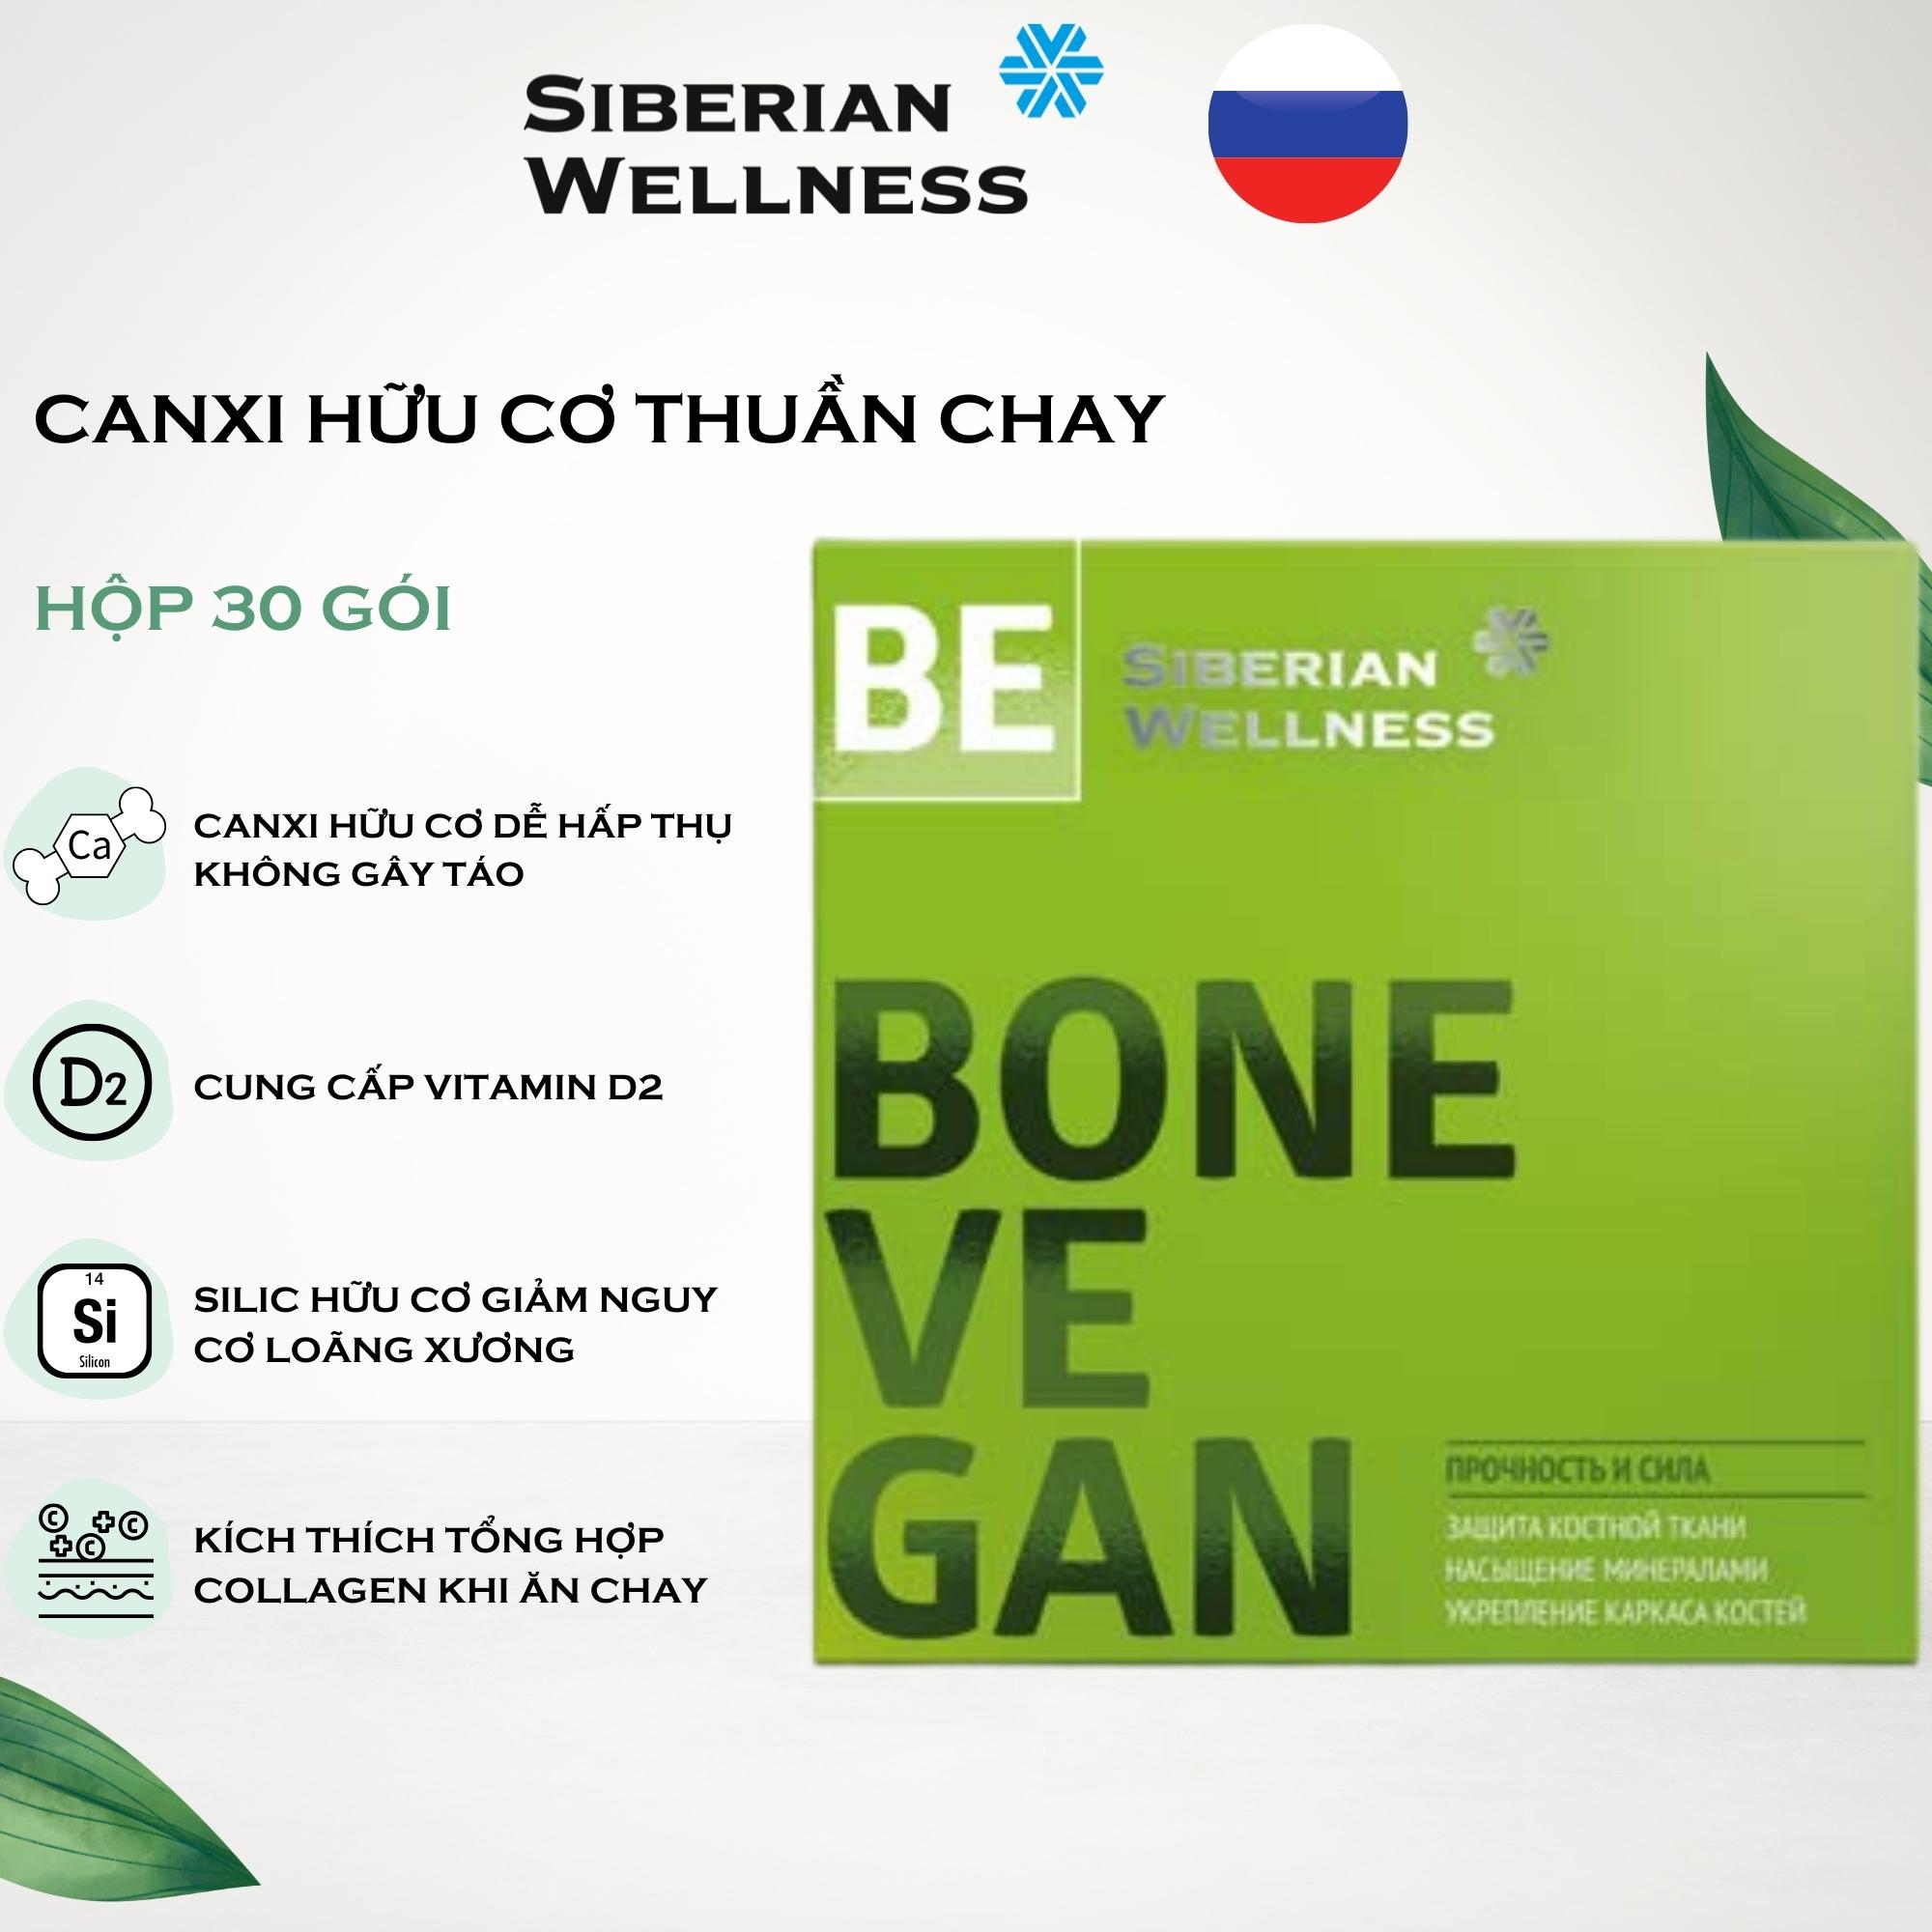 Canxi hữu cơ thuần chay Siberian Wellness 3D Bone Vegan phòng chống loãng